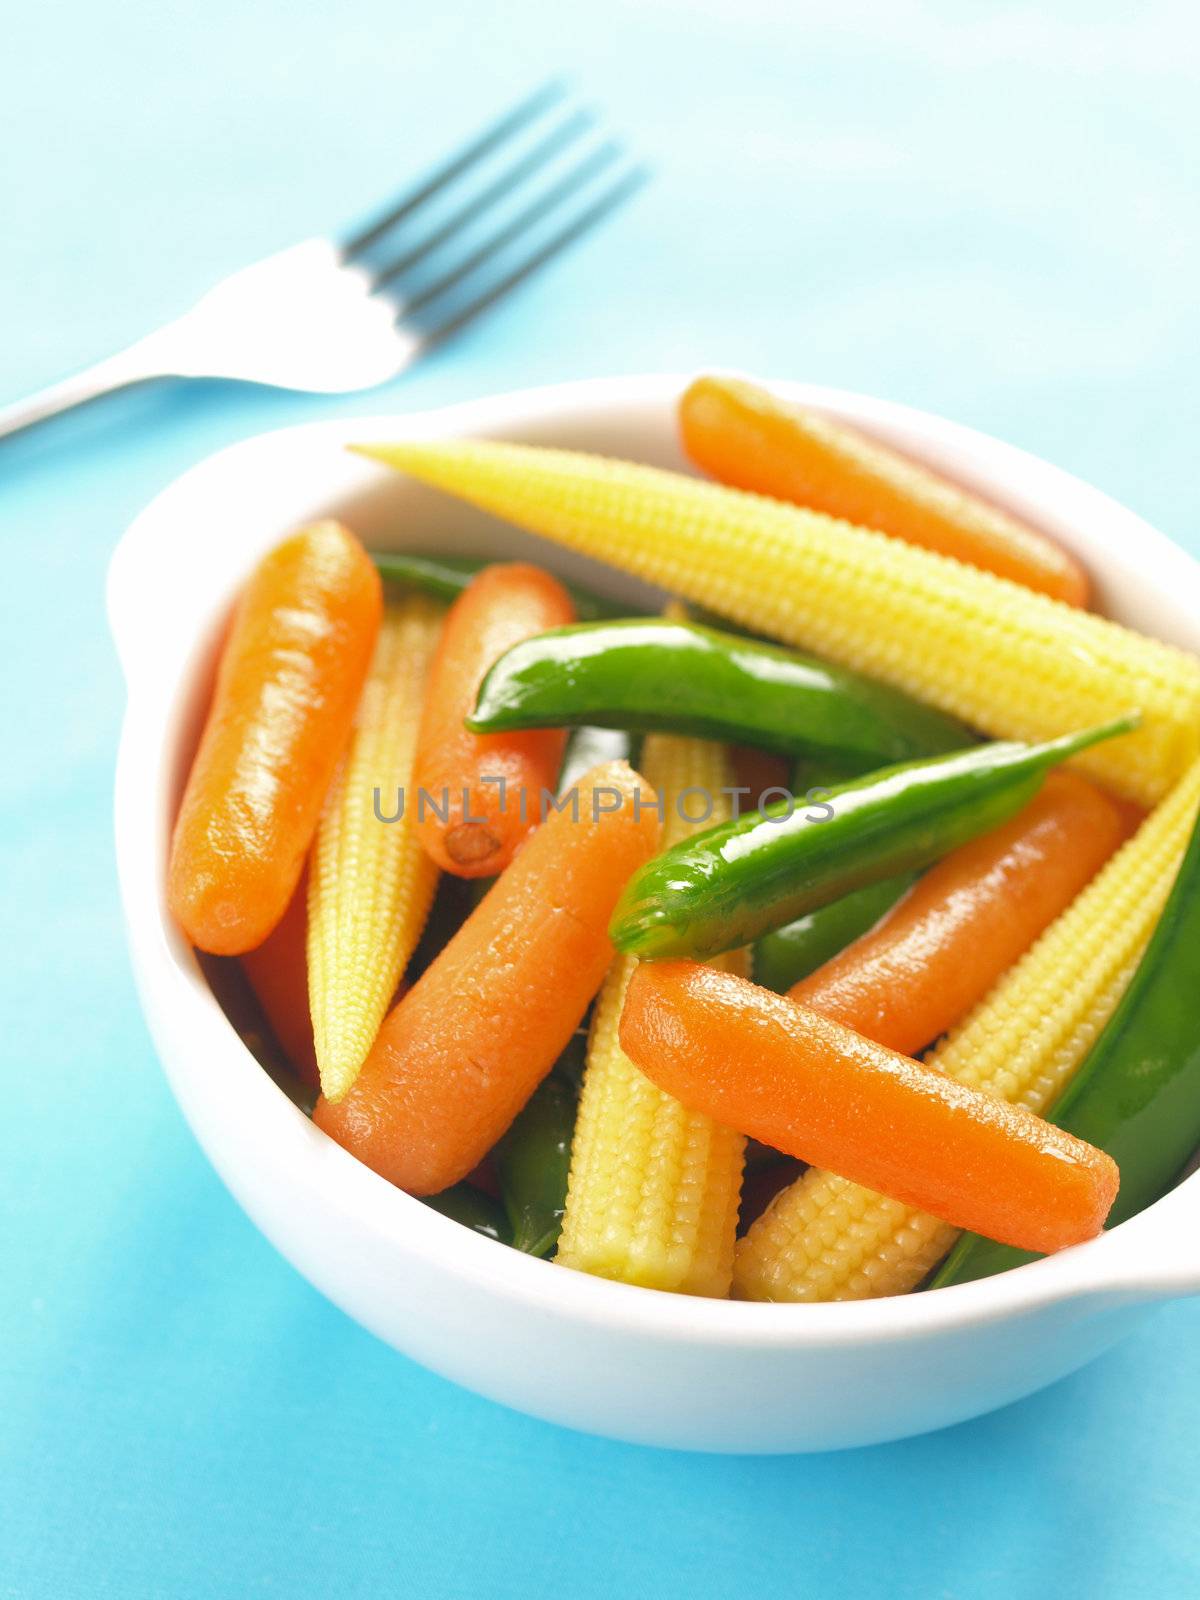 mixed vegetable salad by zkruger